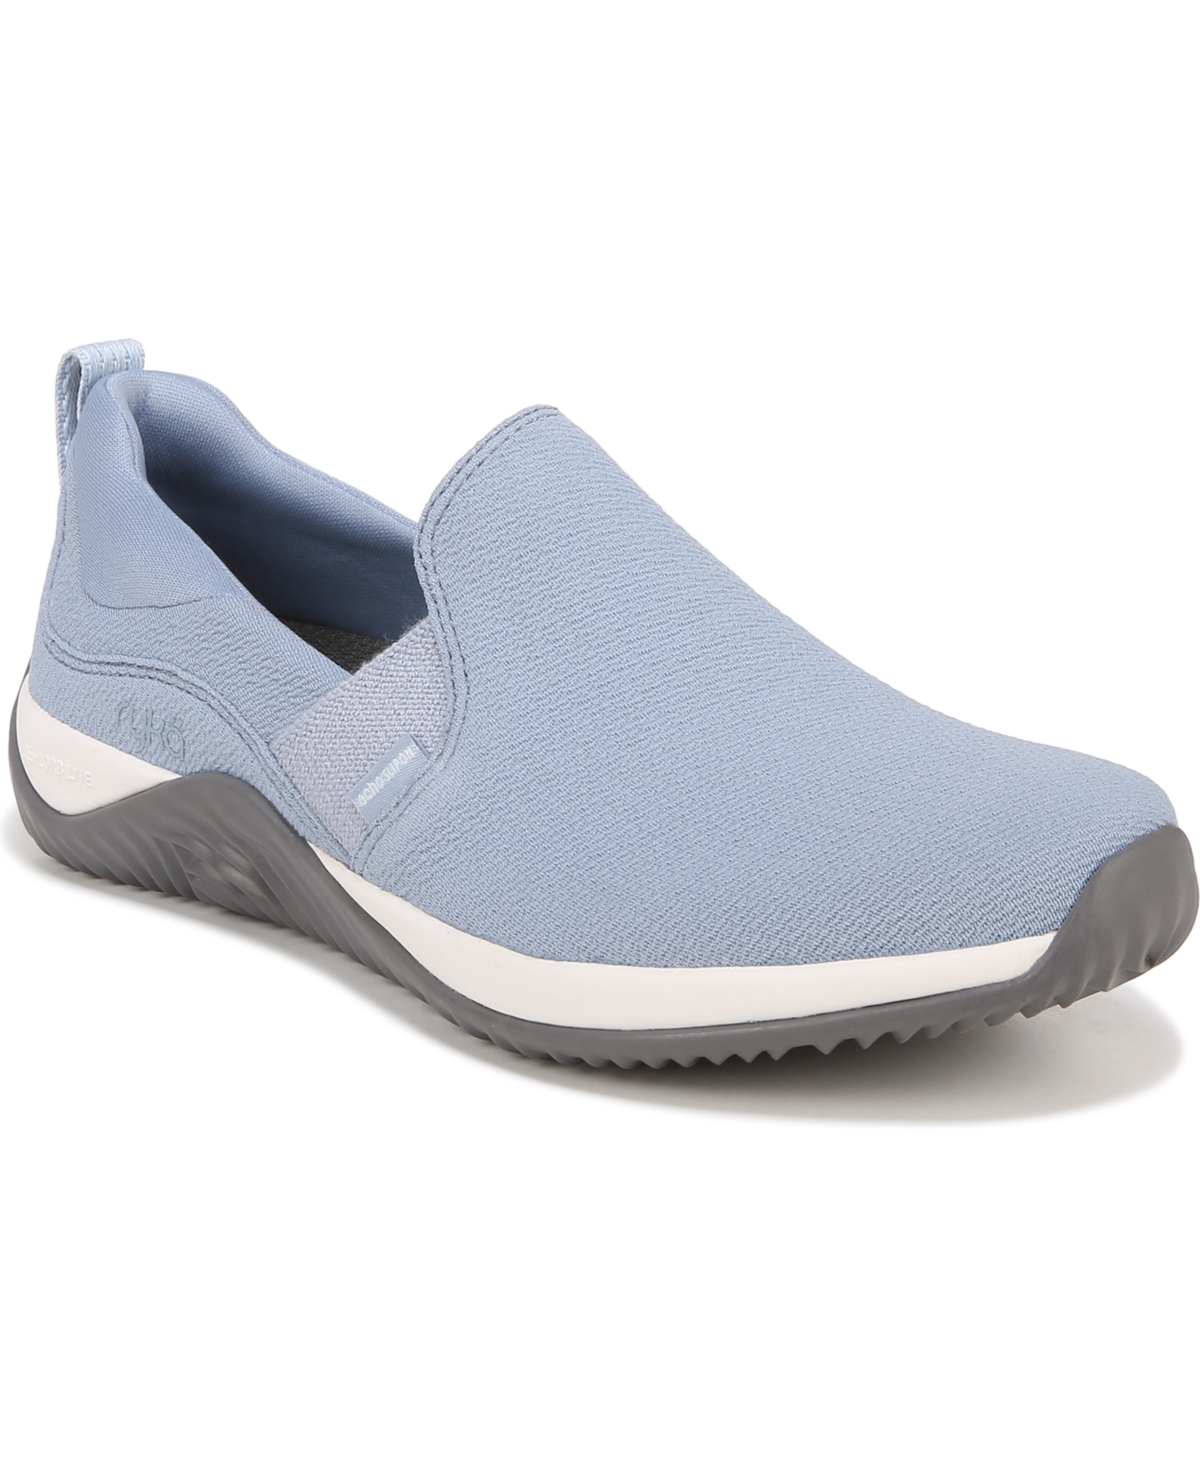 Women's Echo Slip-On Sneakers - Blue Faux Suede